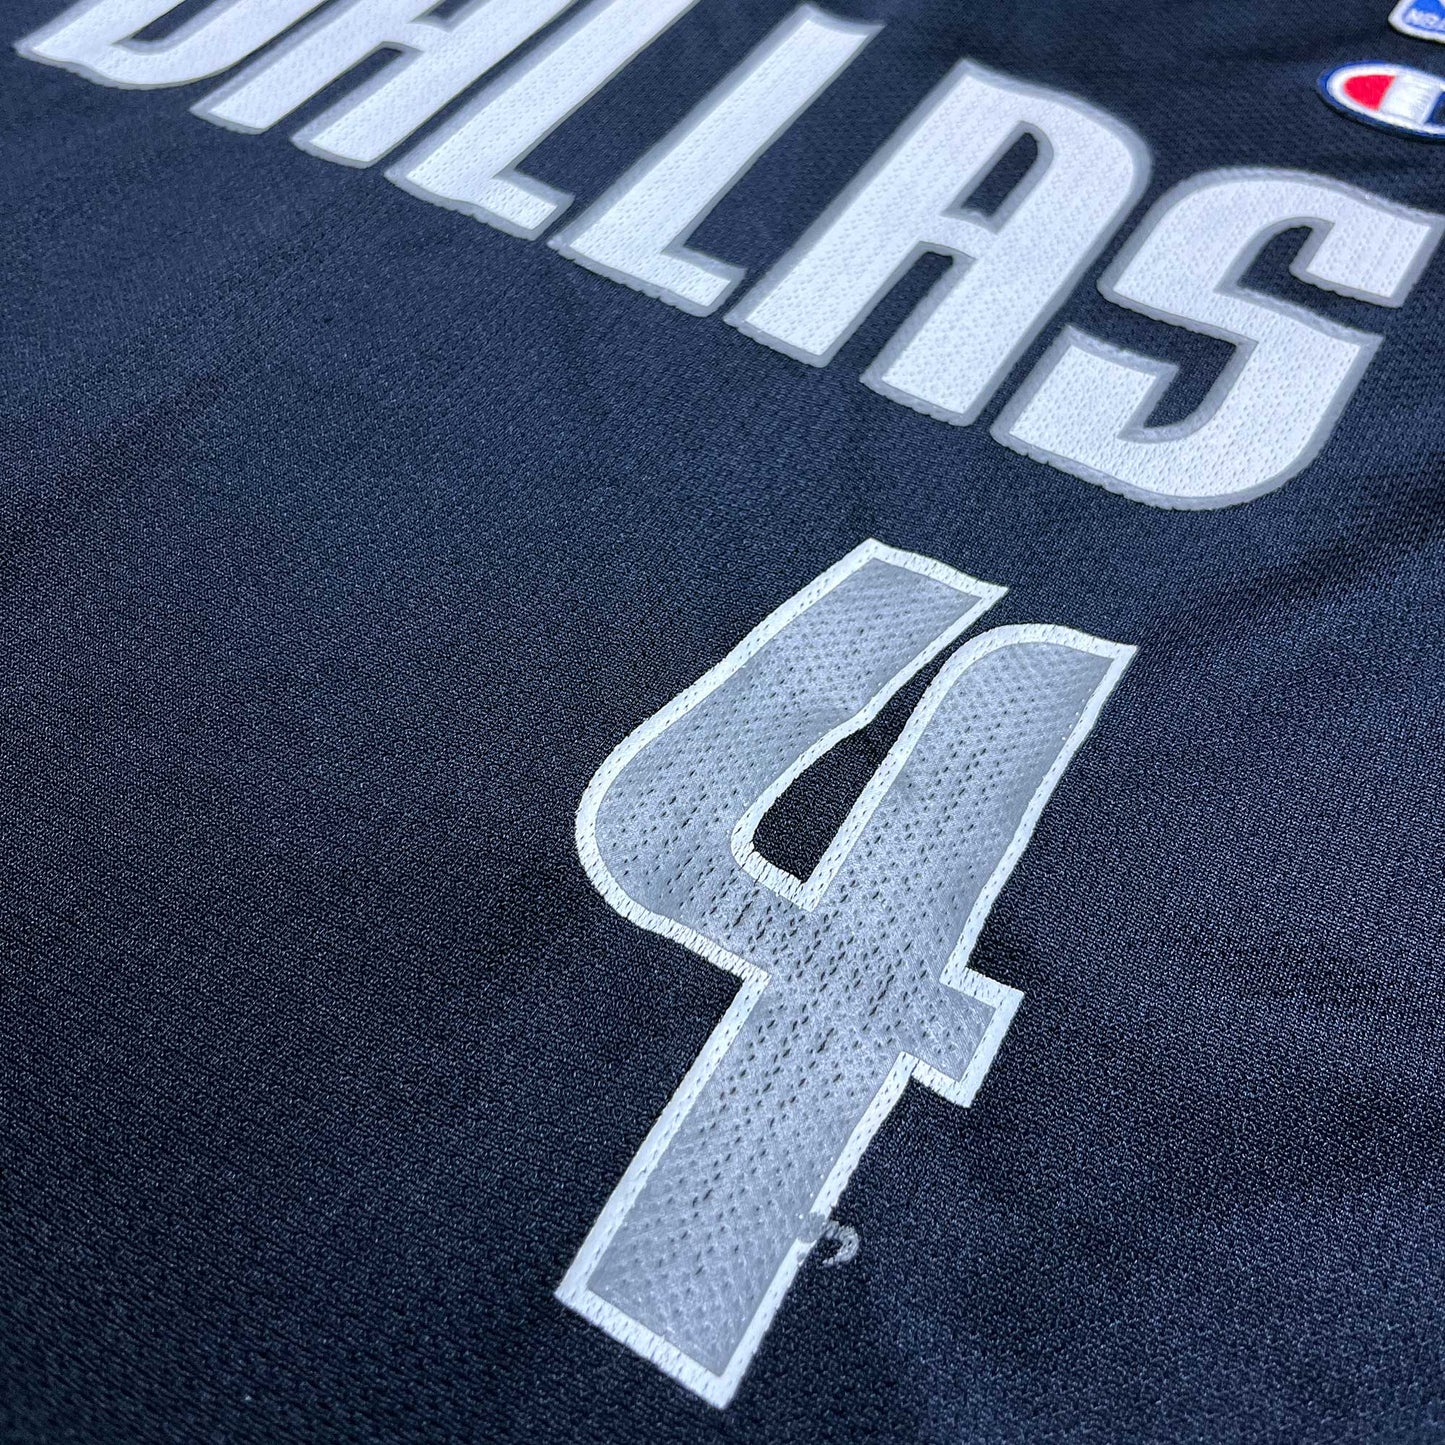 Dallas Mavericks - Michael Finley - Größe XL / 48 - Champion - NBA Trikot